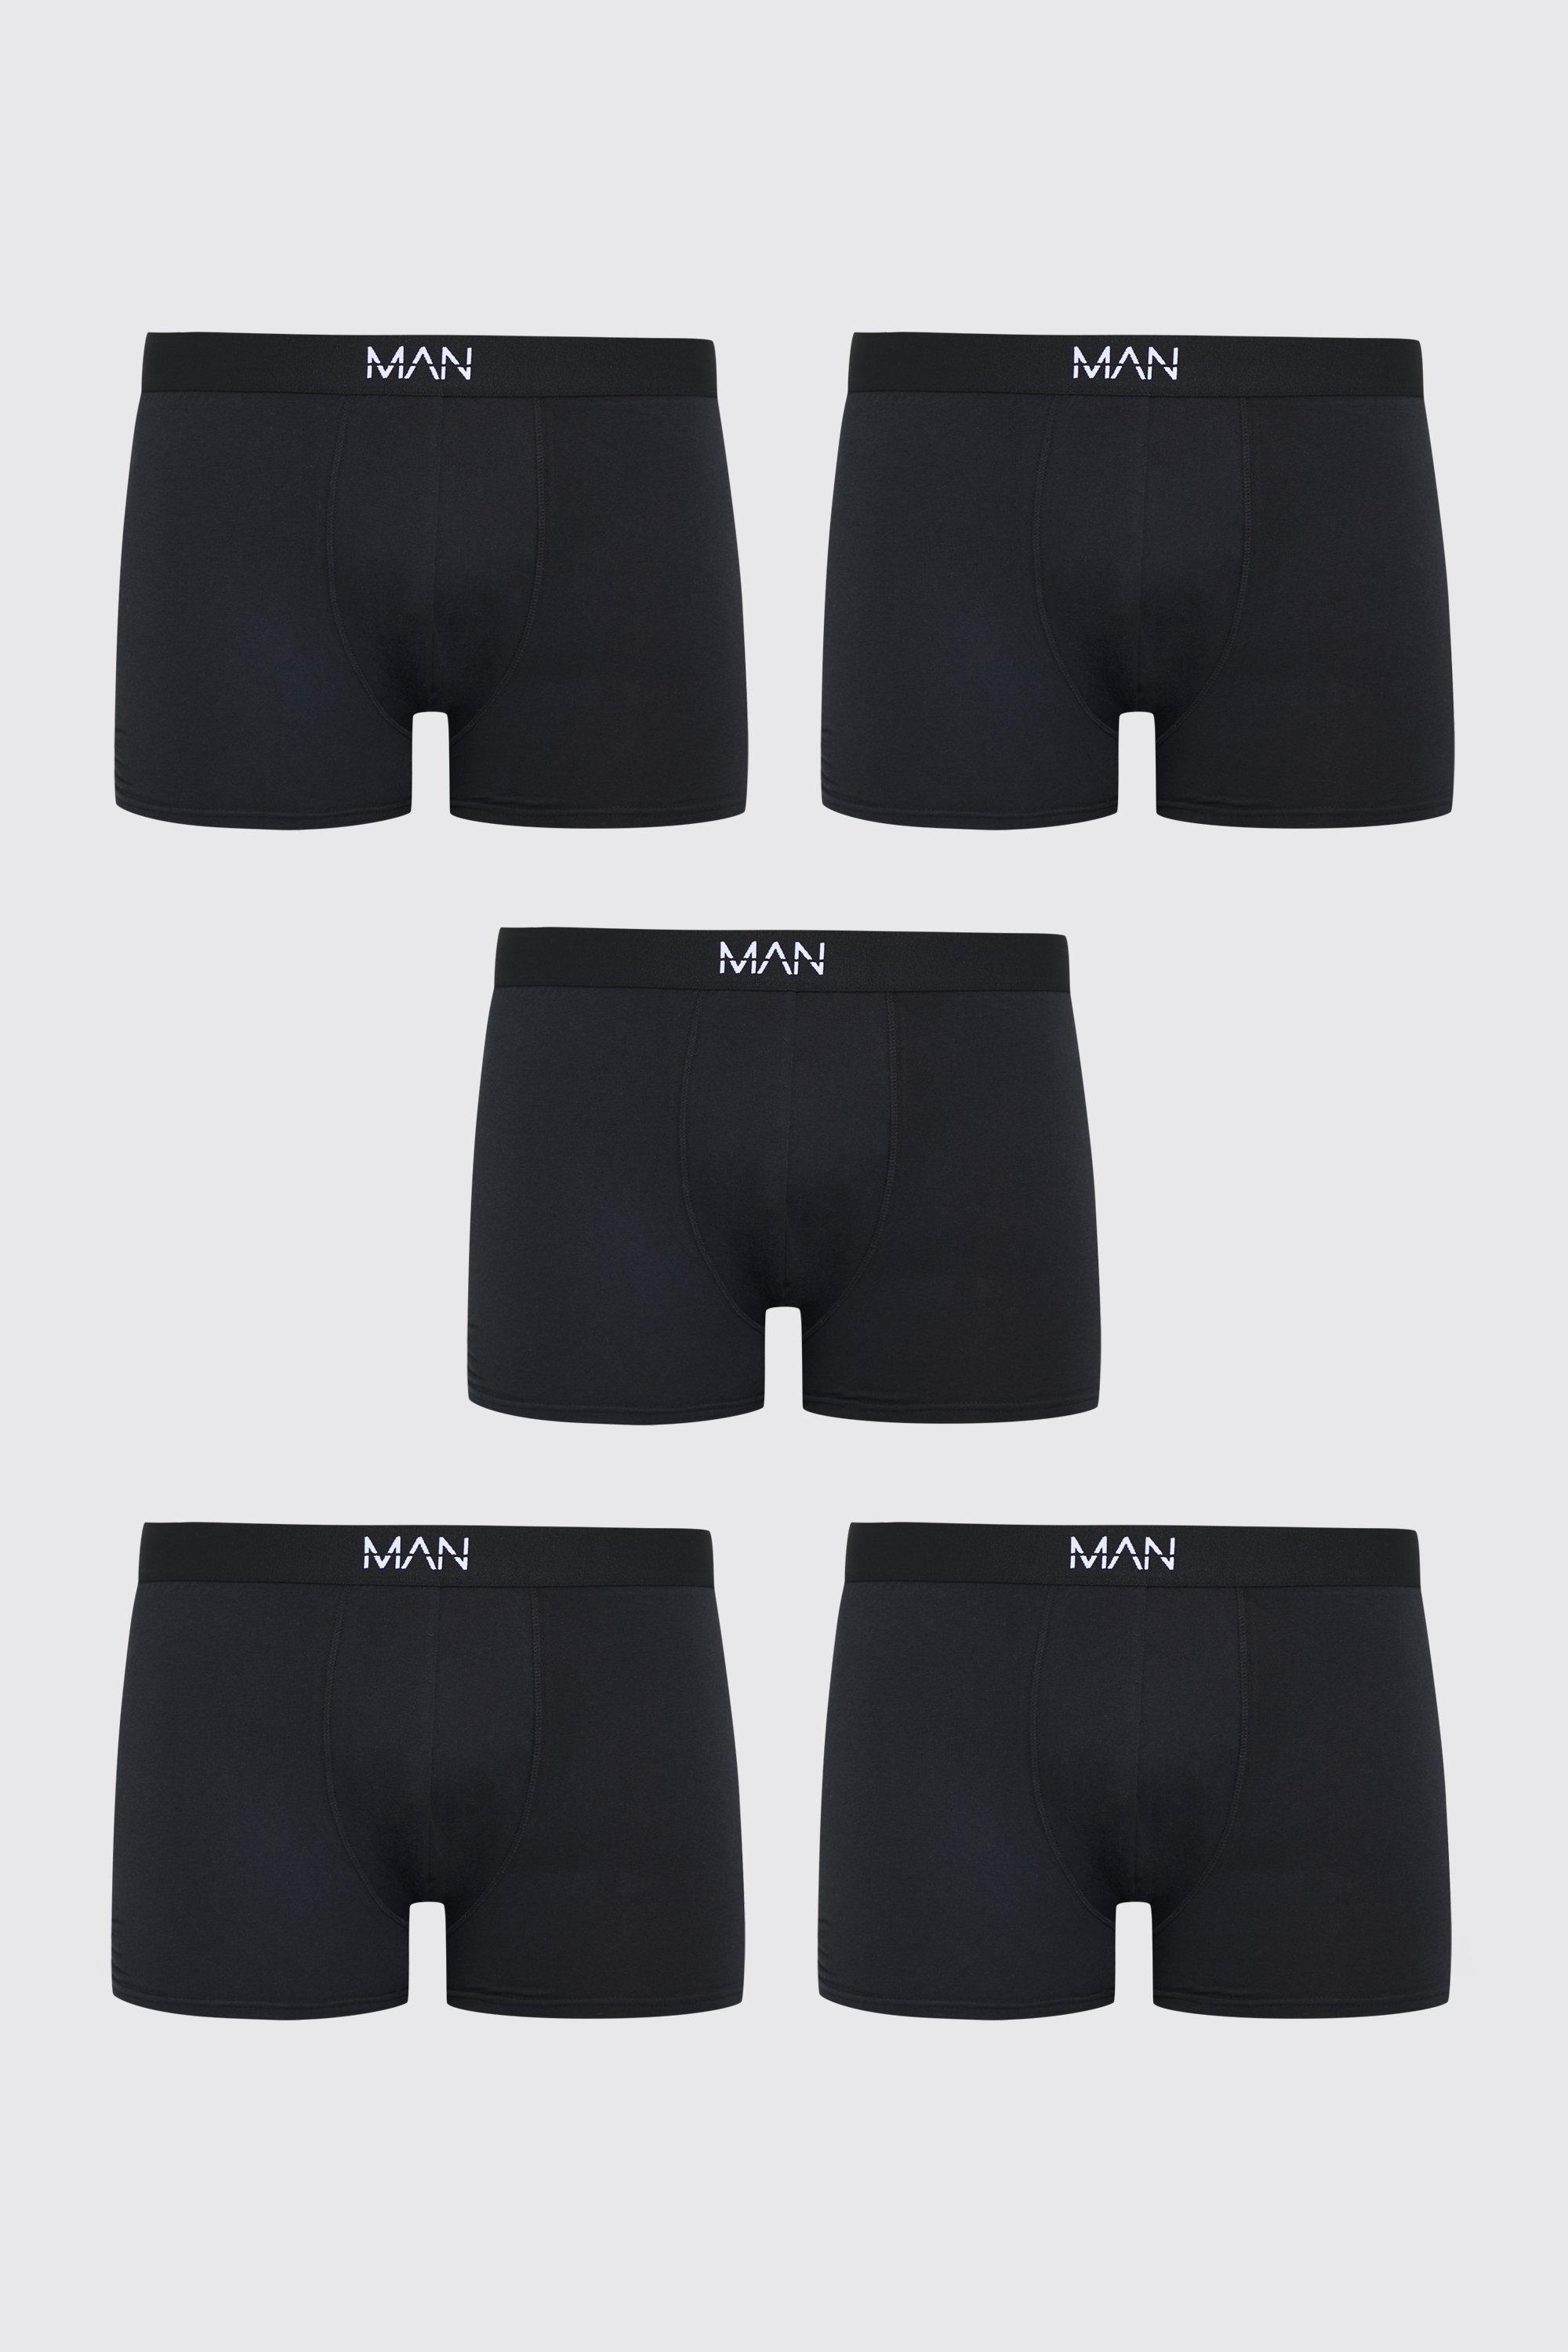 grande taille - lot de 5 boxers classiques neutres homme - noir - xxxxxl, noir